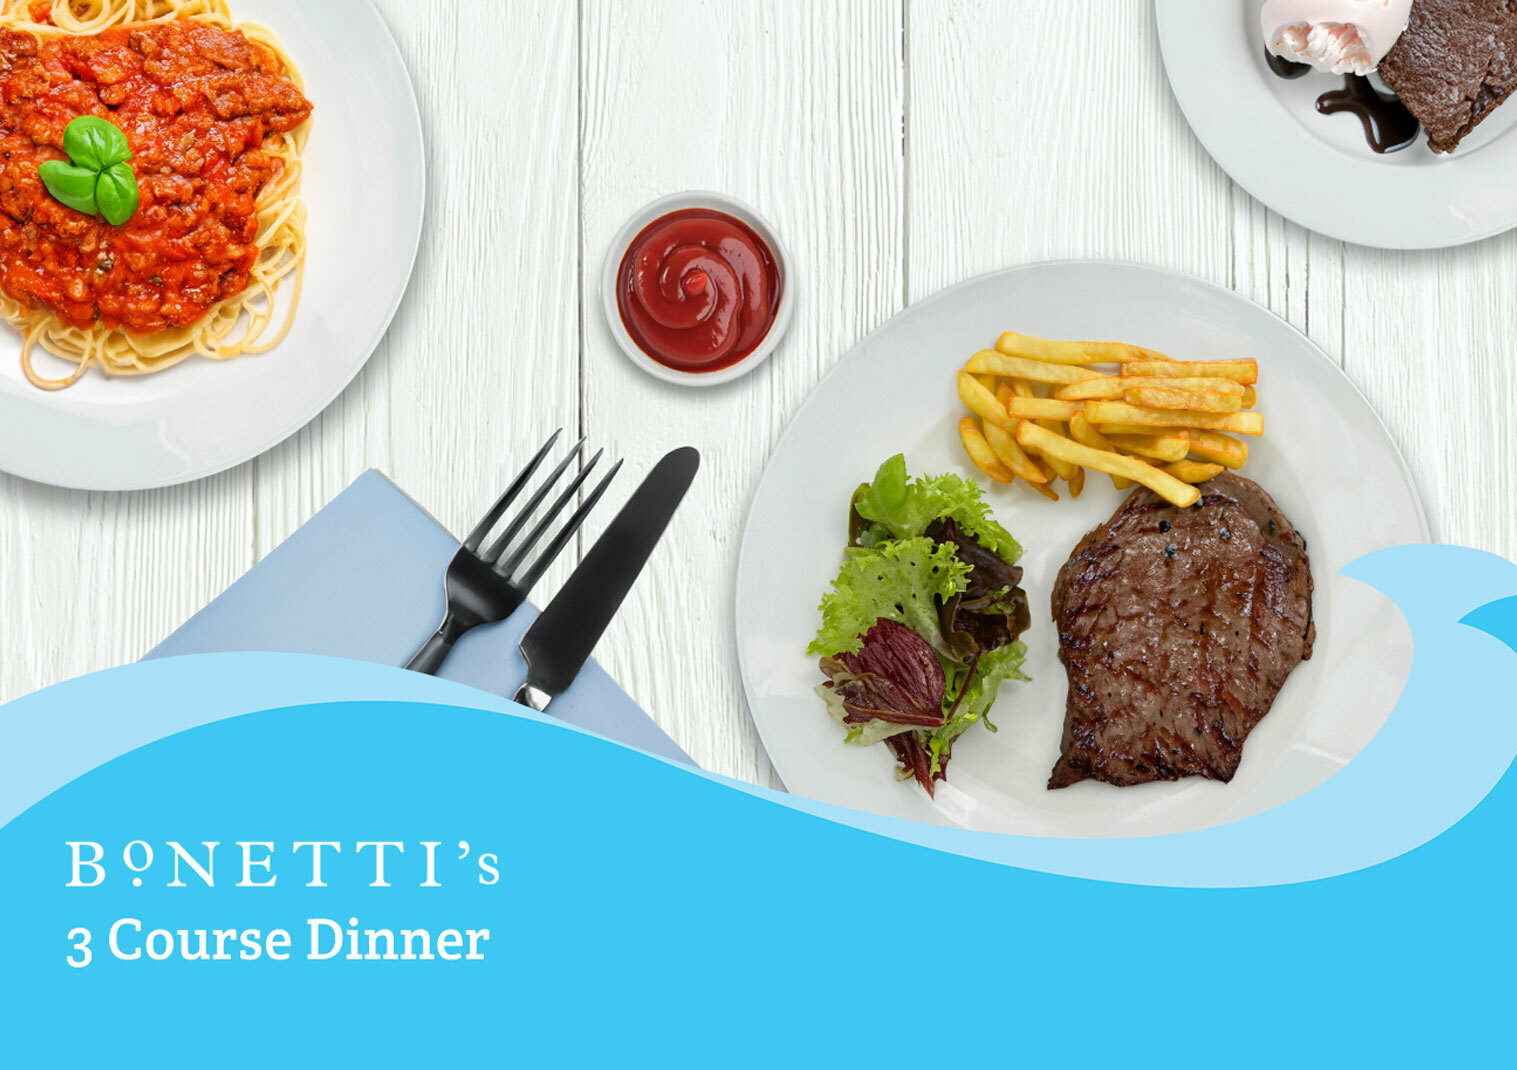 The Merton Hotel 65% off Bonetti’s 3 Course Dinner